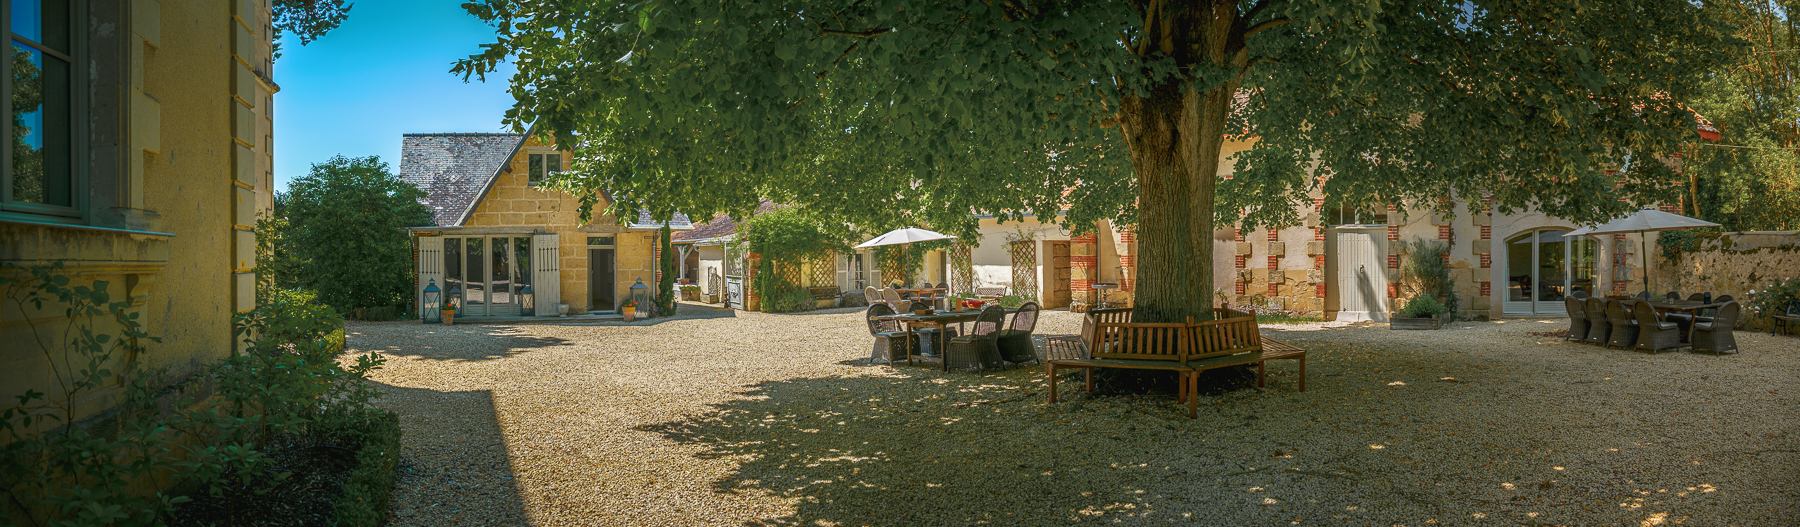 Beautiful courtyard at Chateau de la Vigne